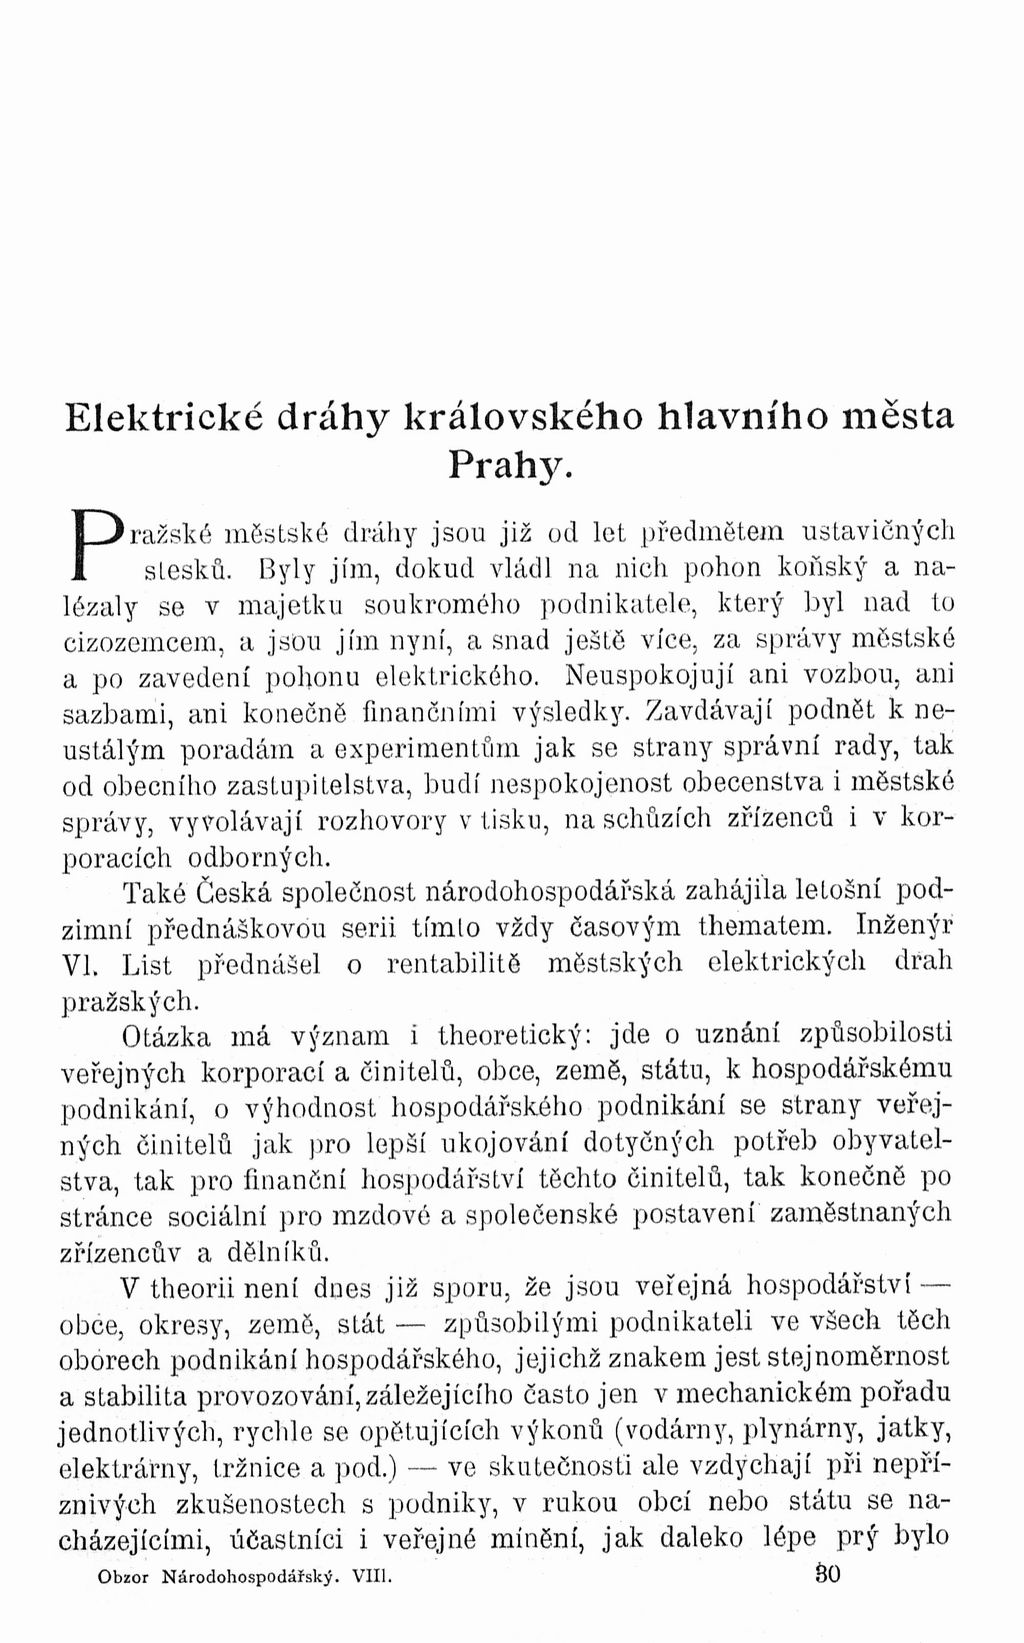 Elektrické dráhy královského hlavního města Prahy